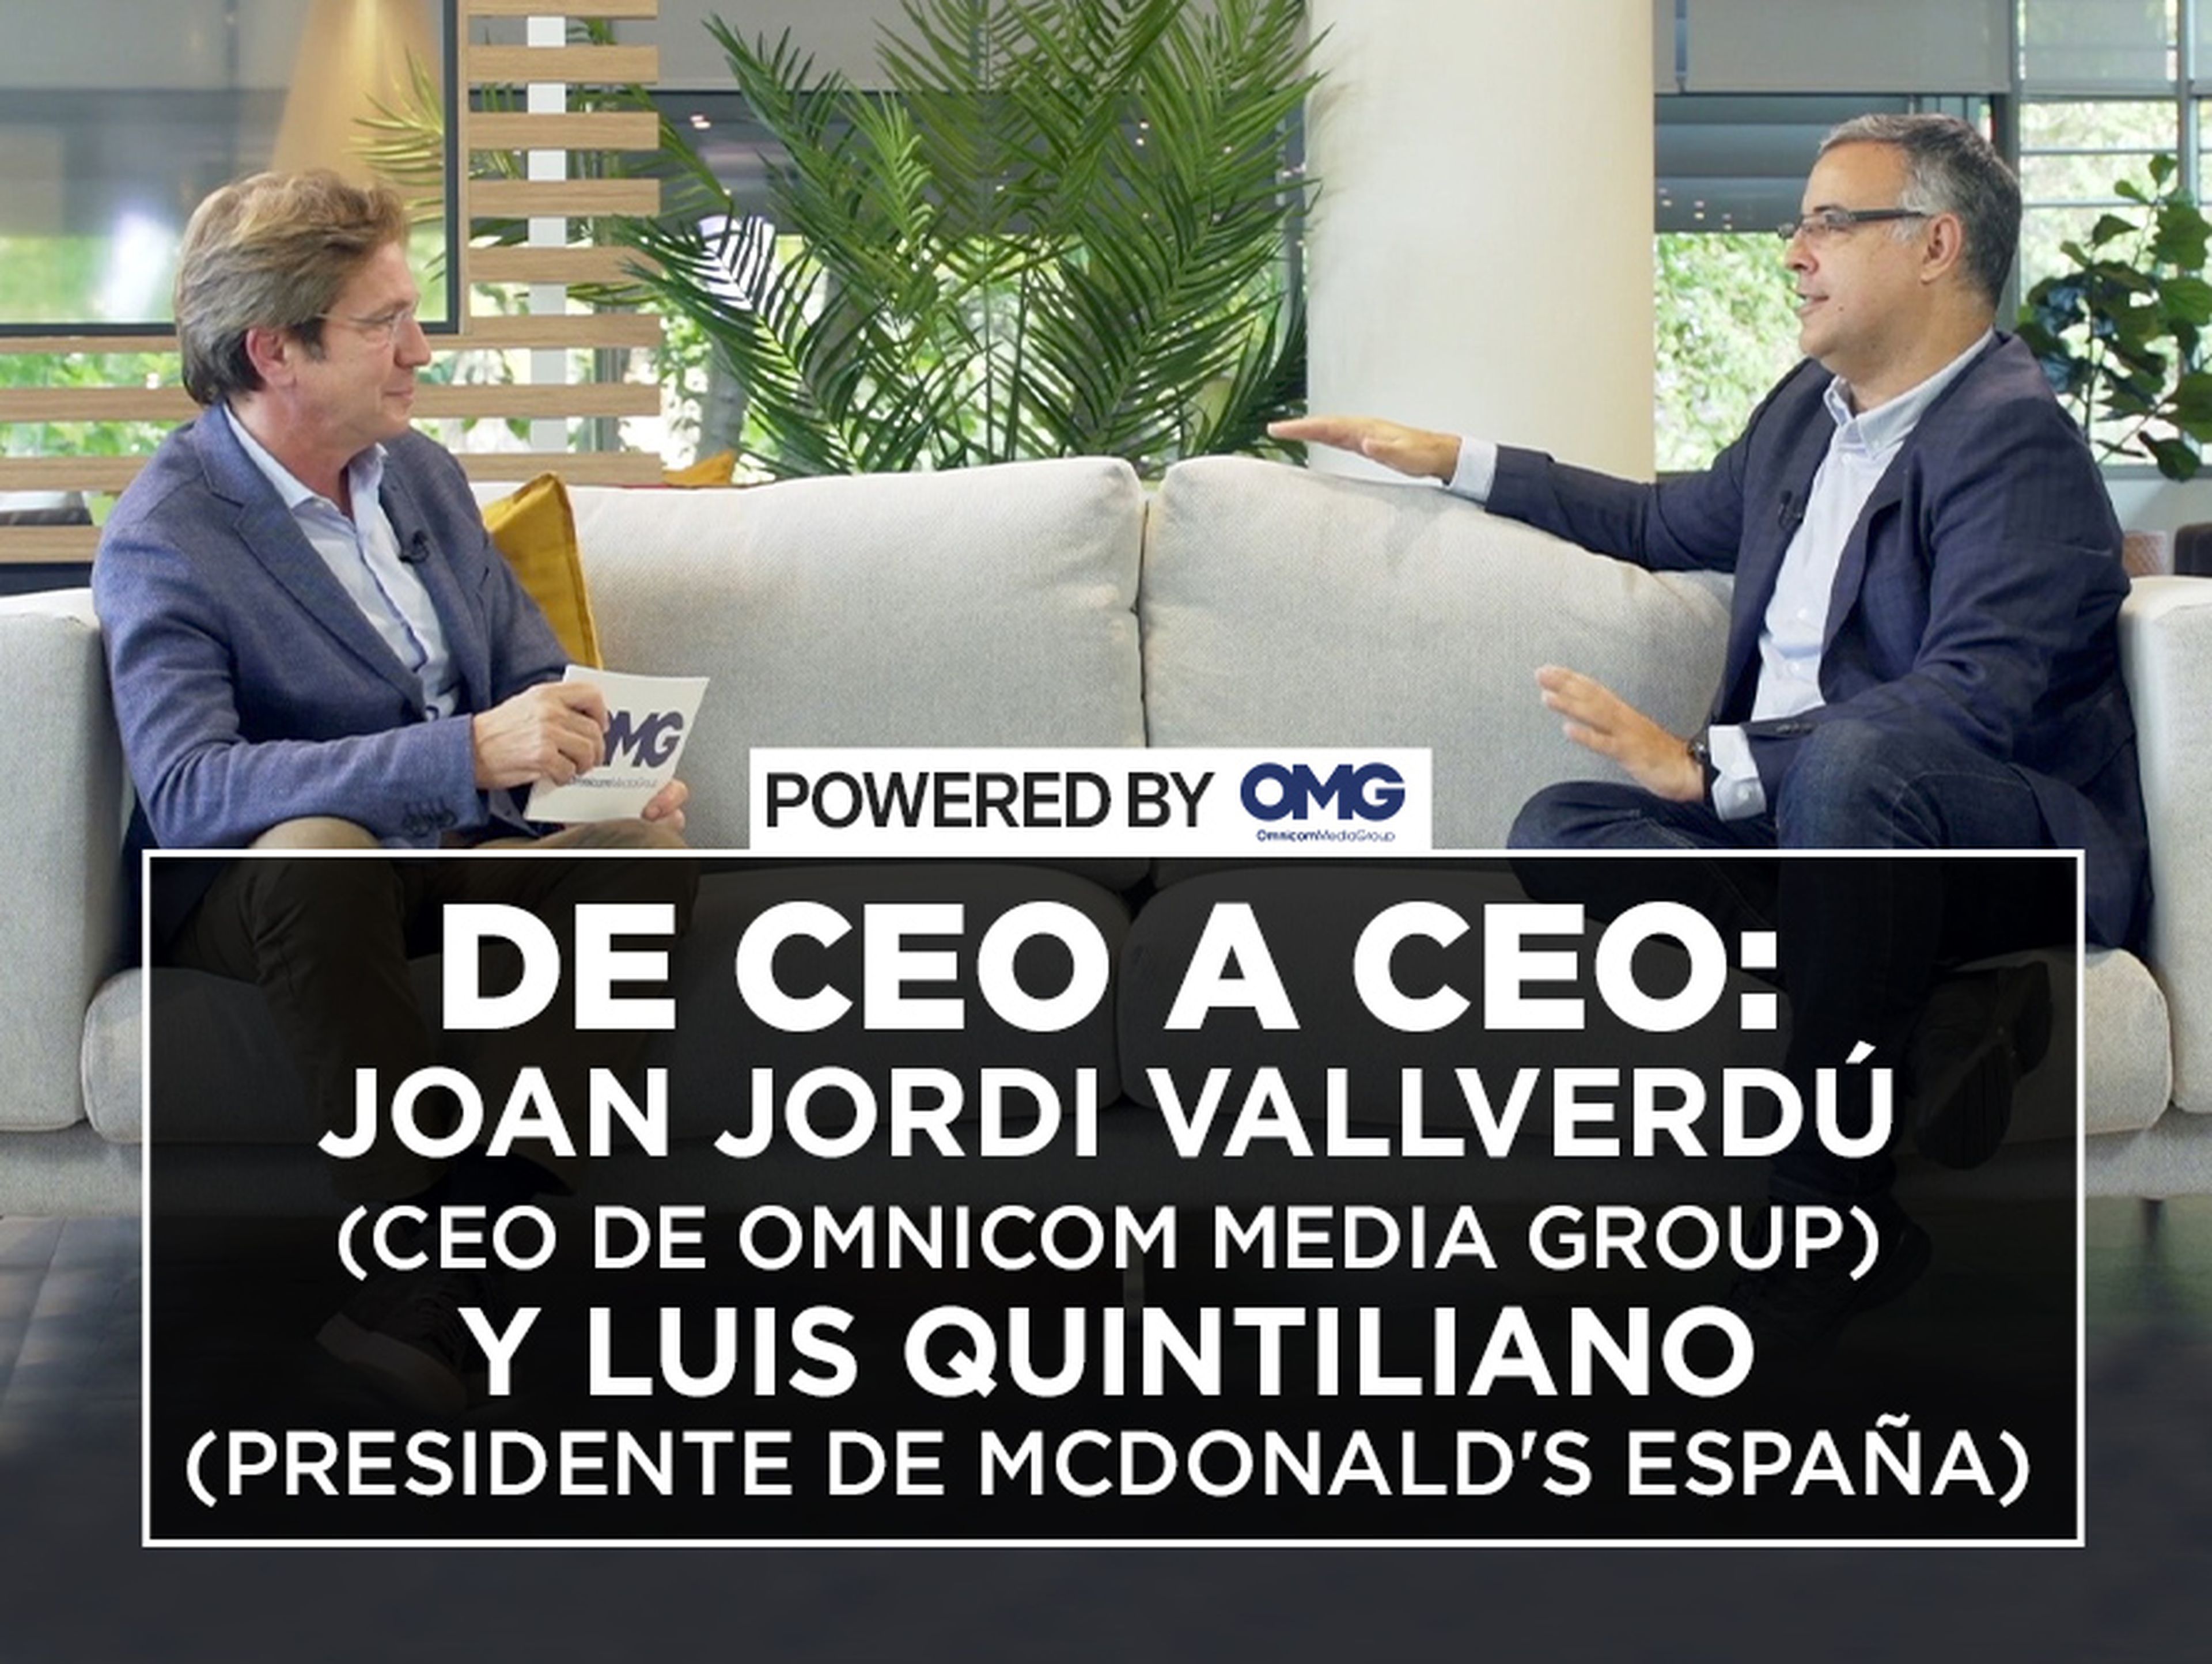 DE CEO A CEO - MCDONALD'S ESPAÑA - IMAGEN DESTACADO